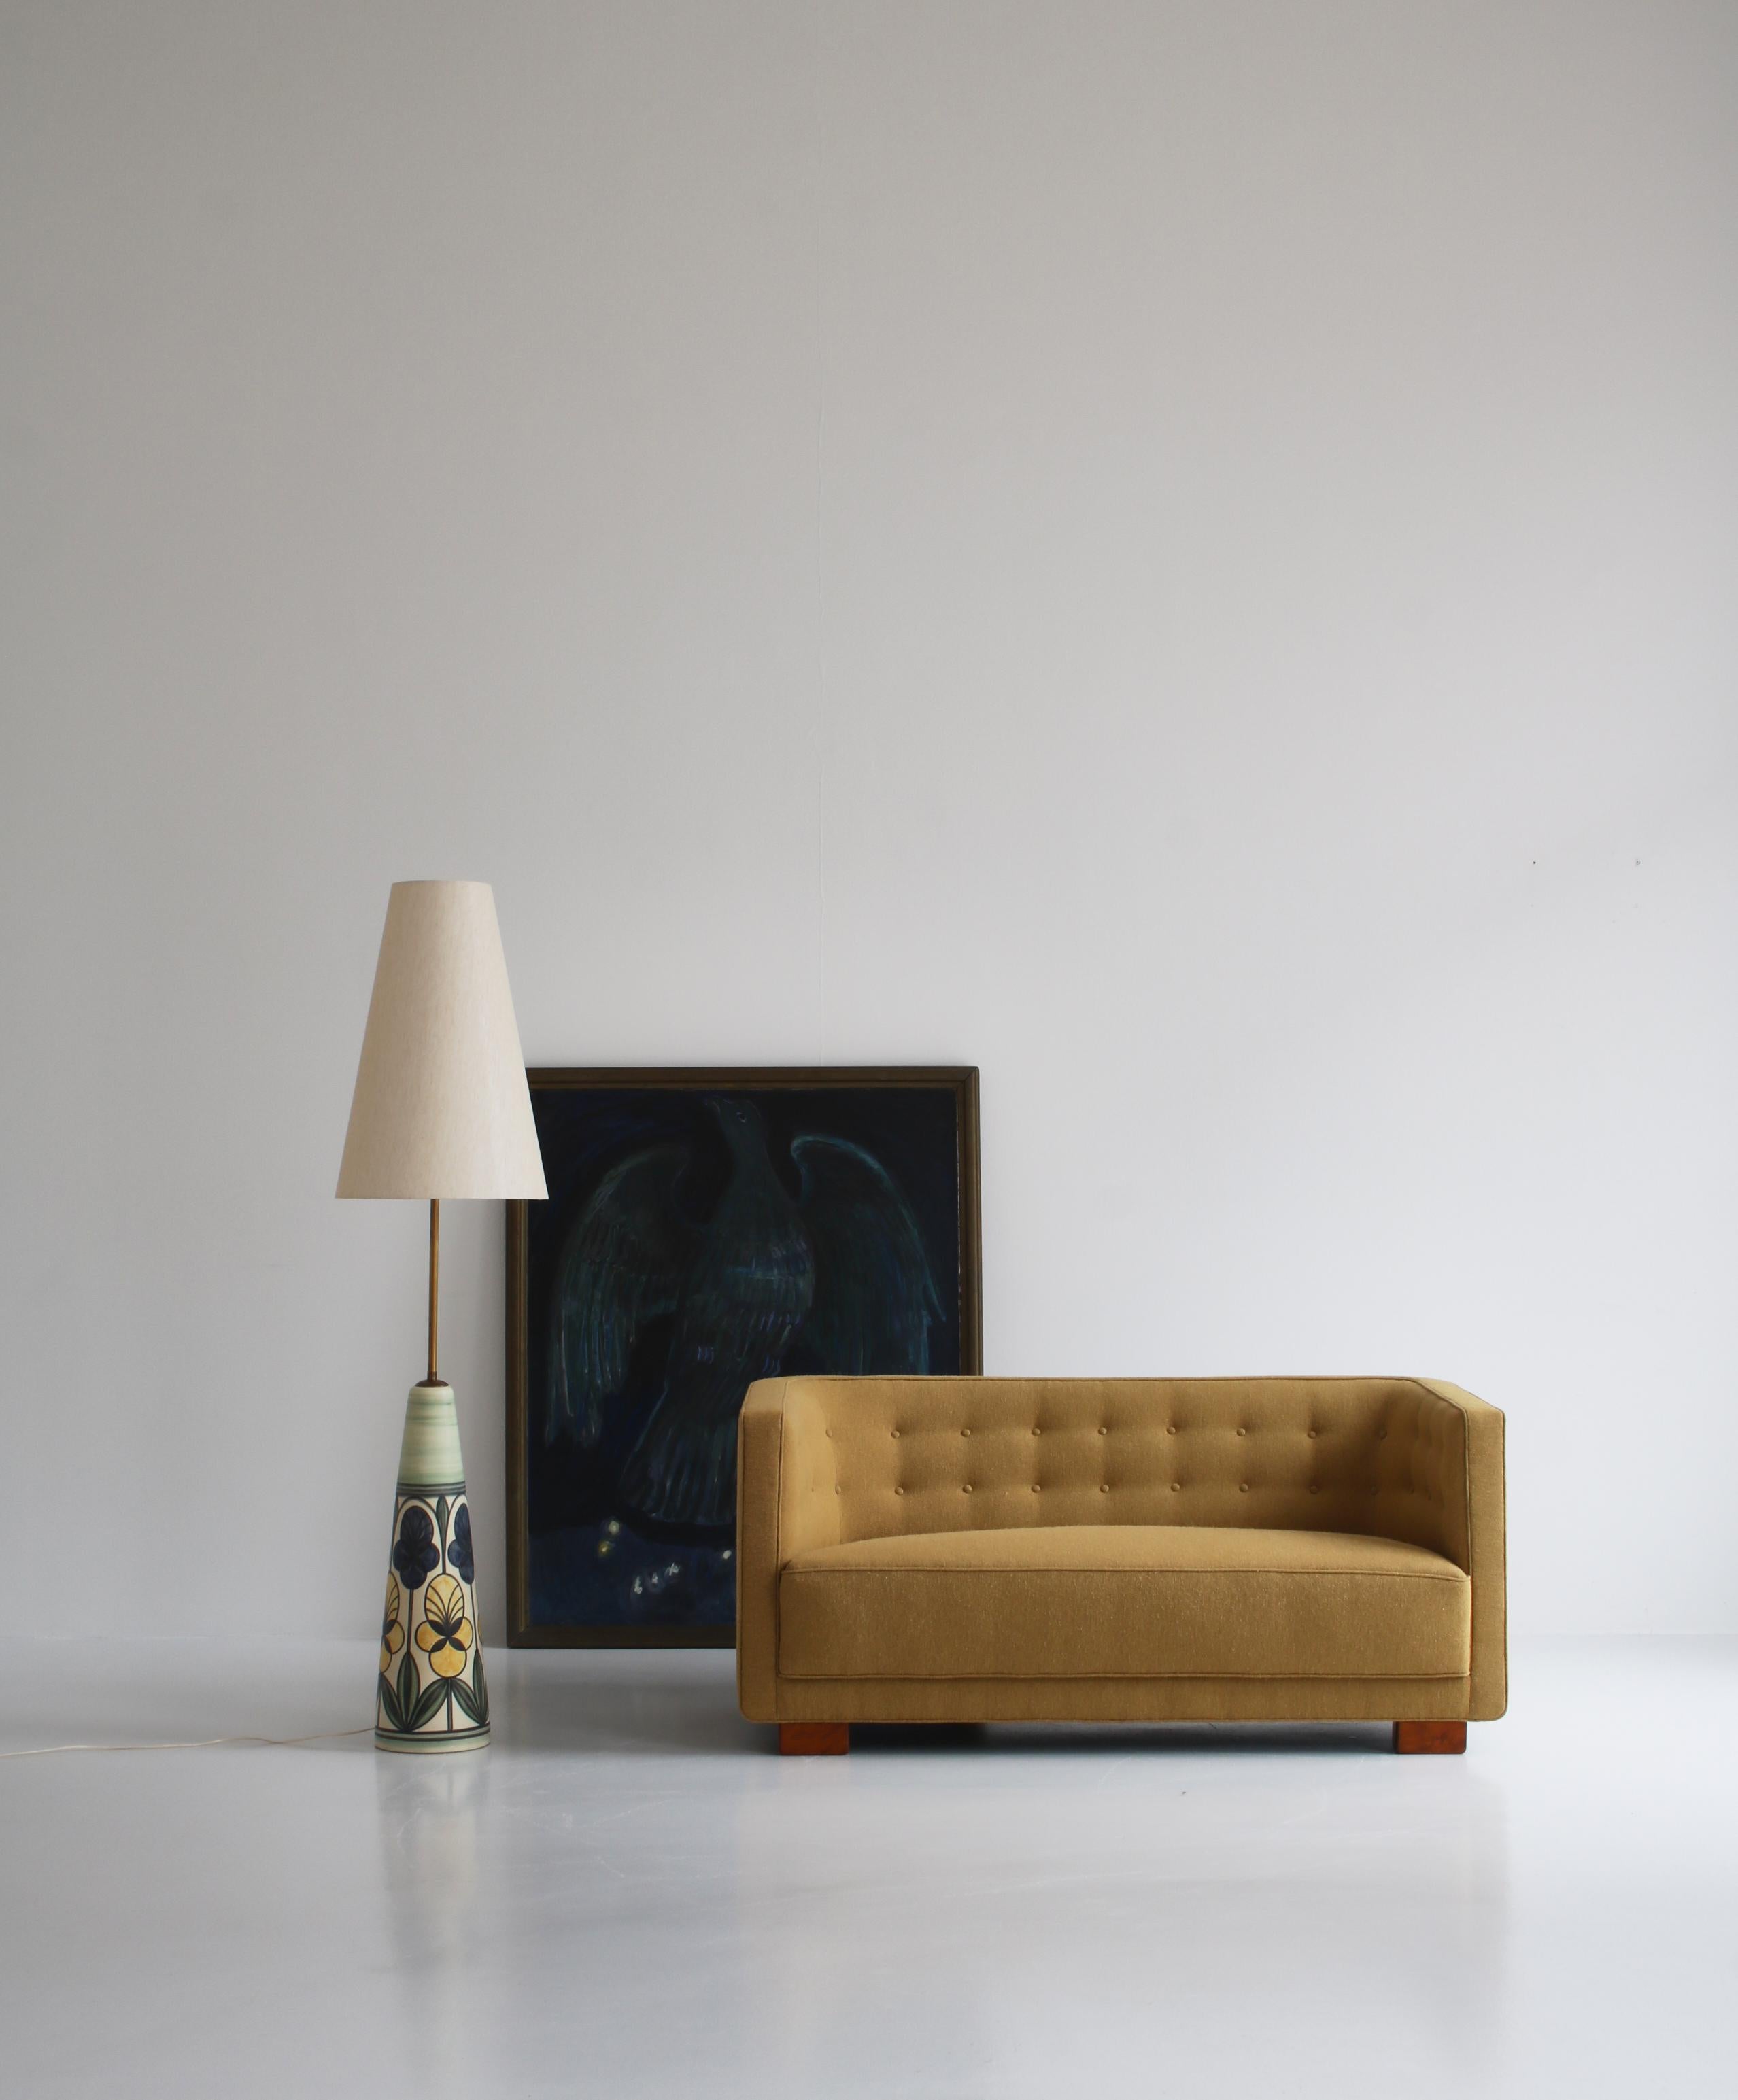 Erstaunliches, frühes Art-déco-Zweisitzer-Sofa, das dem dänischen Architekten Flemming Lassen zugeschrieben wird und von dem hochwertigen Möbelhaus 